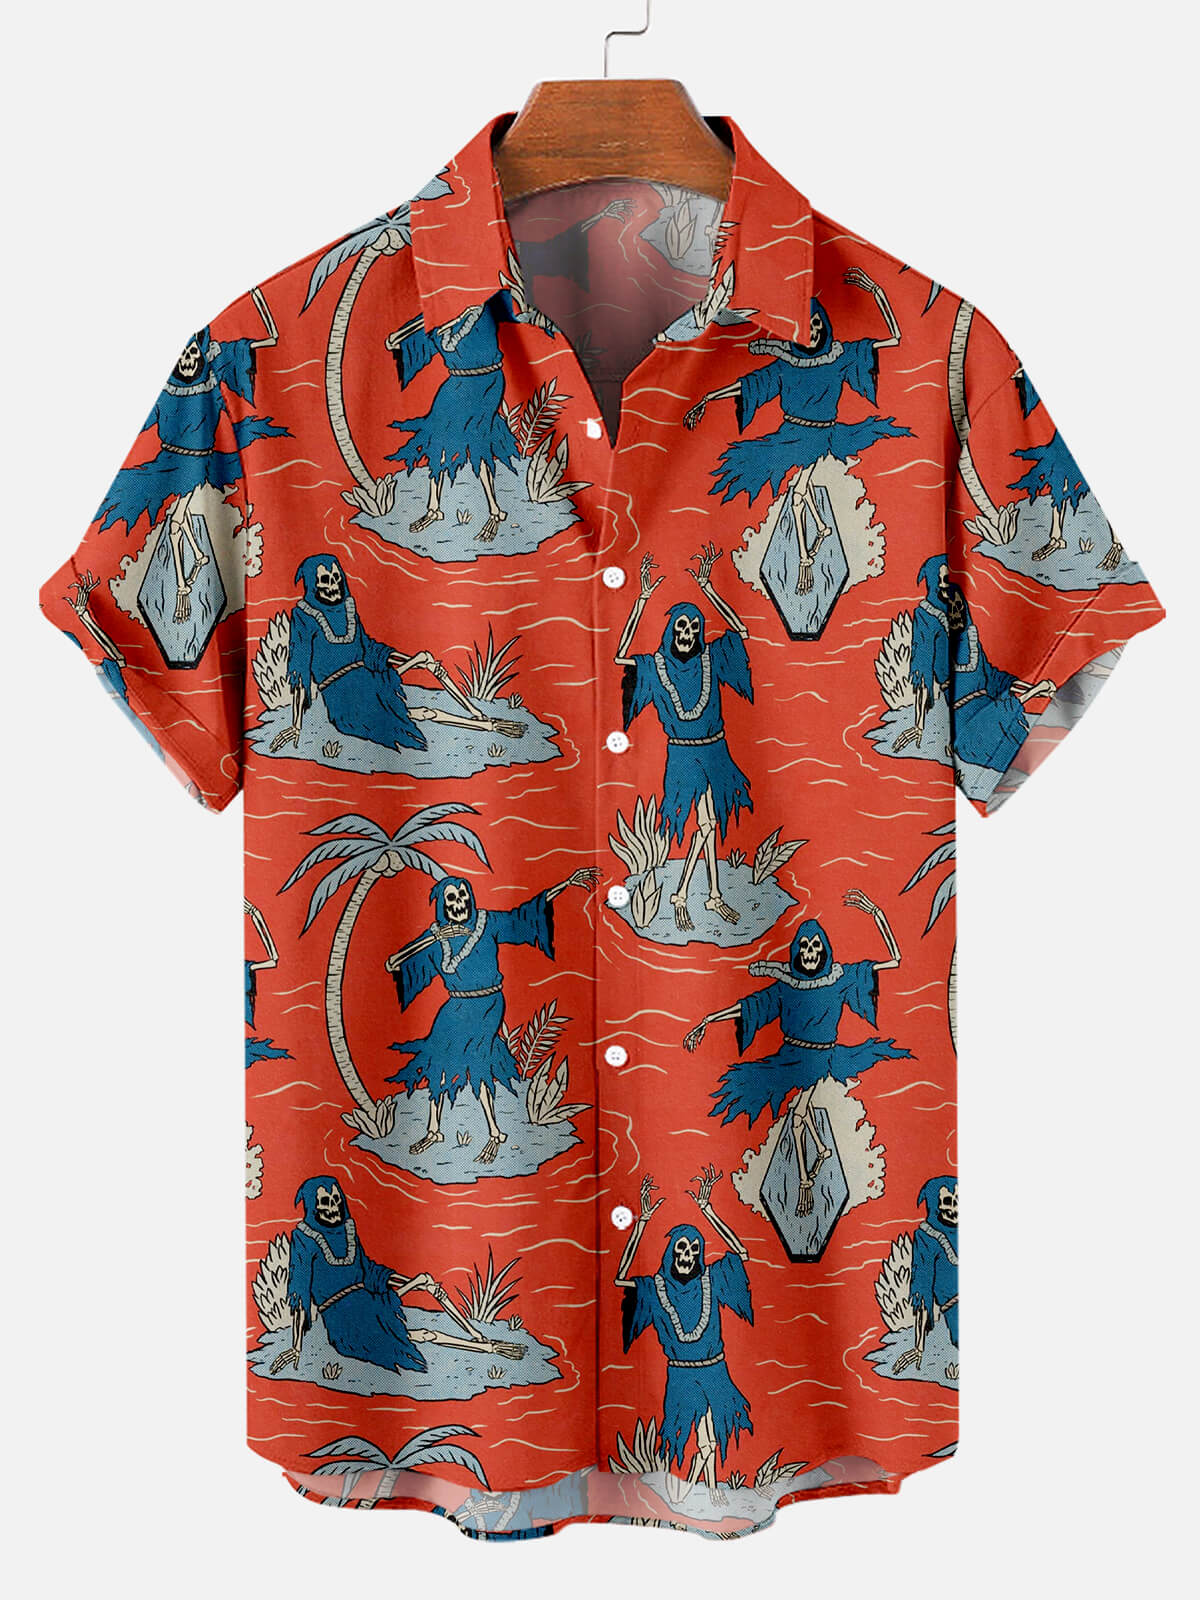 Halloween Hawaiian Print Men's Short Sleeve Shirt